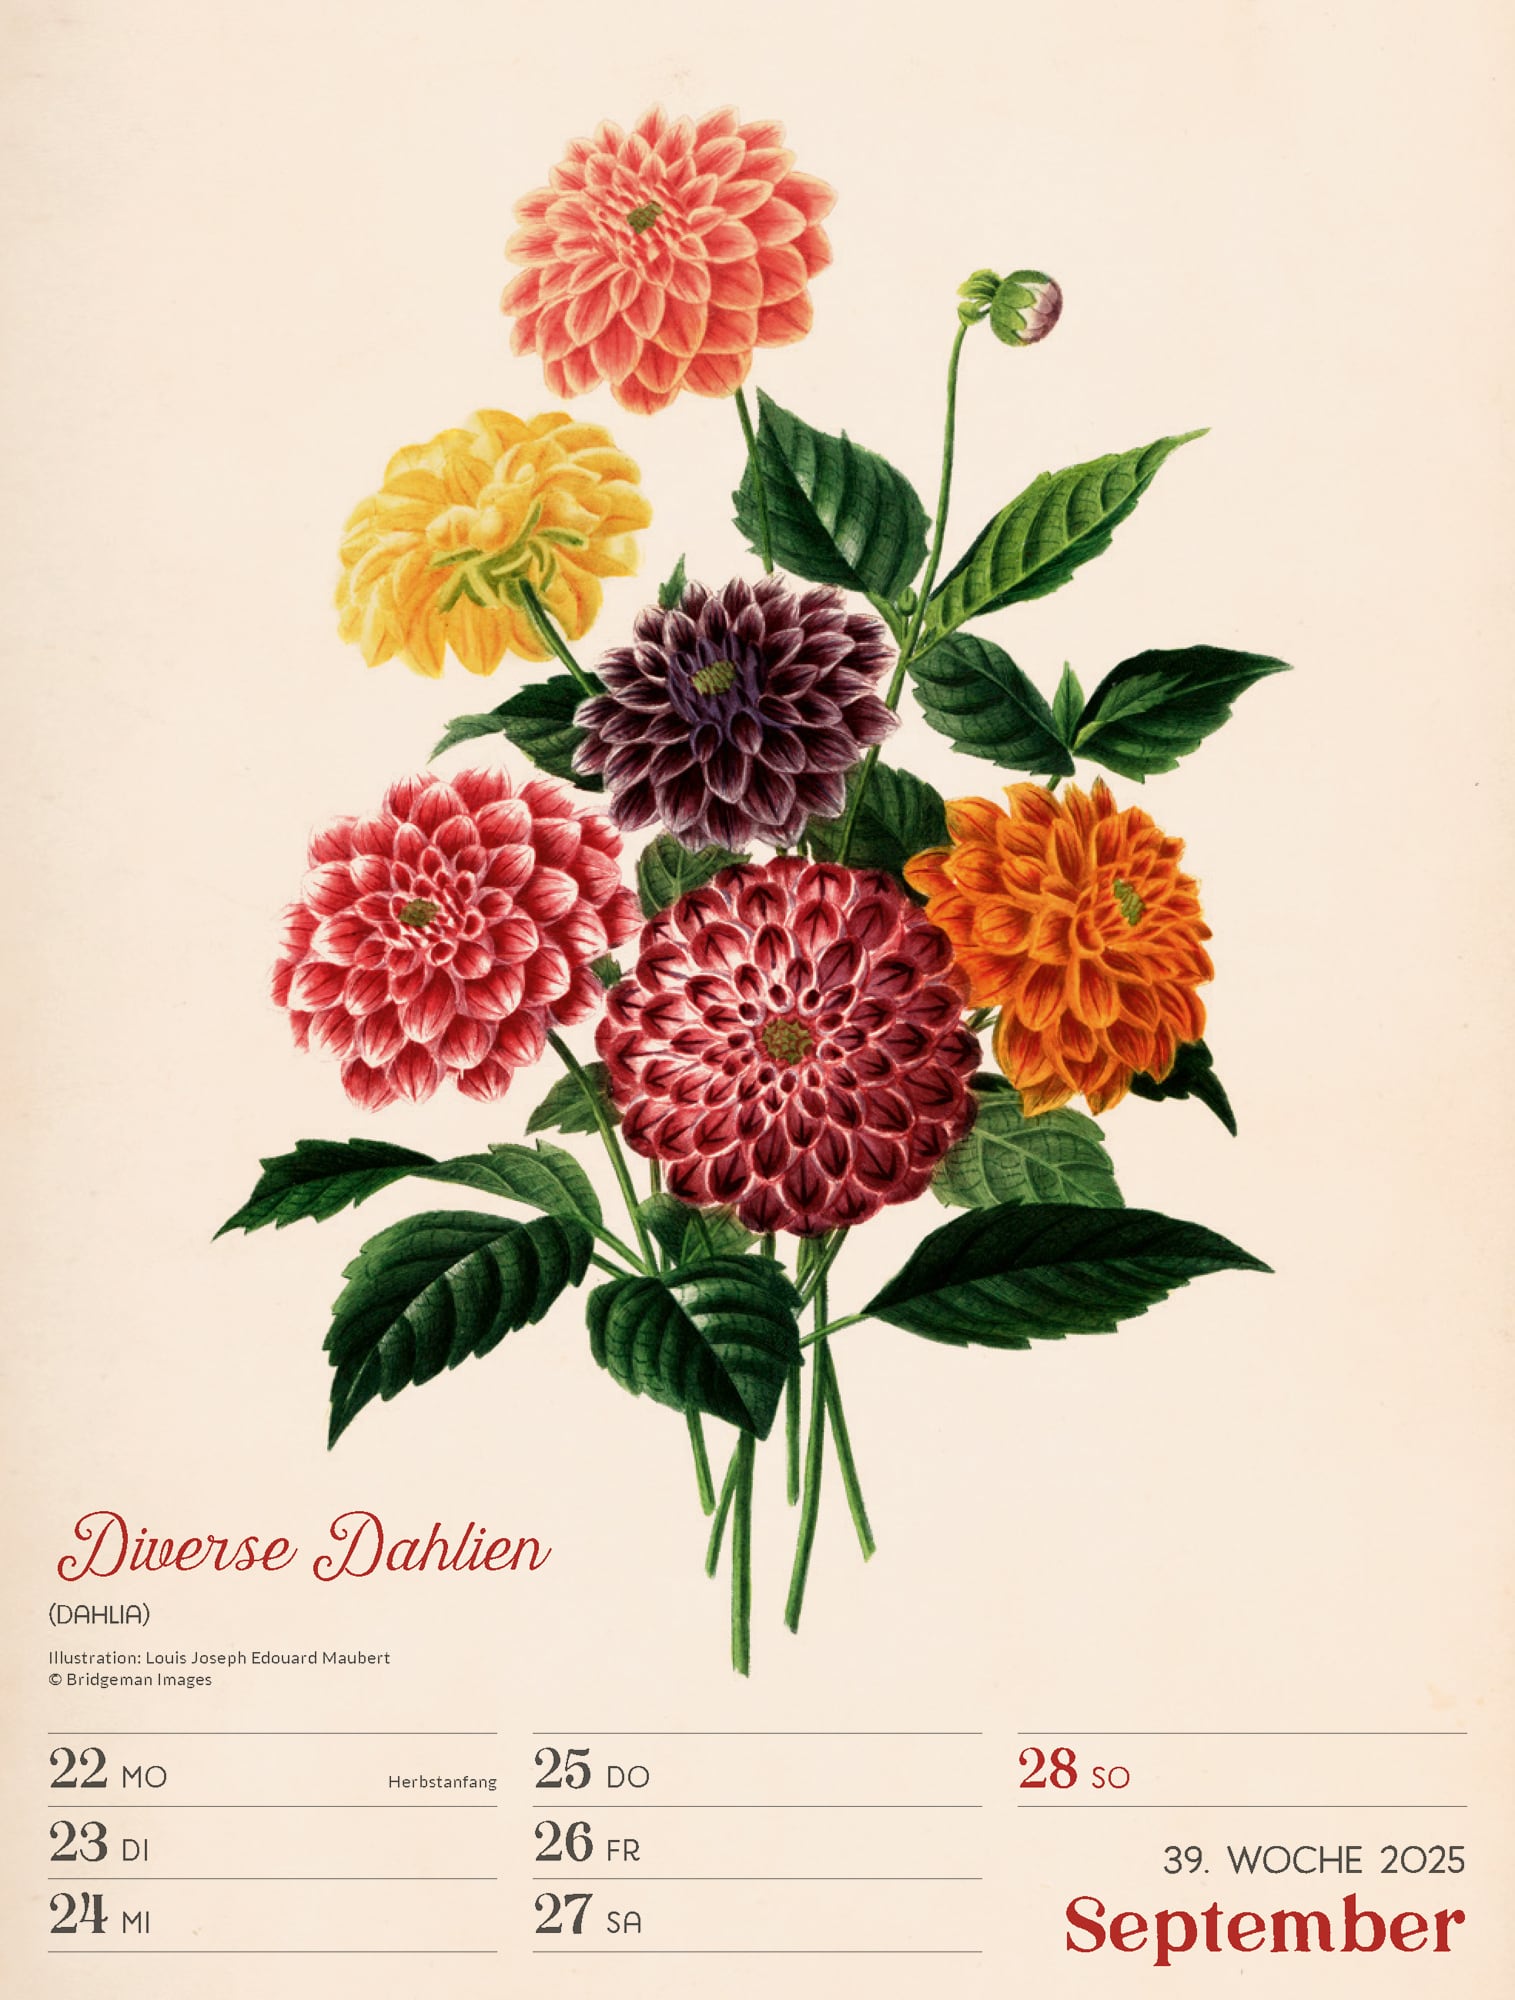 Ackermann Calendar Ars Floralis 2025 - Weekly Planner - Inside View 42